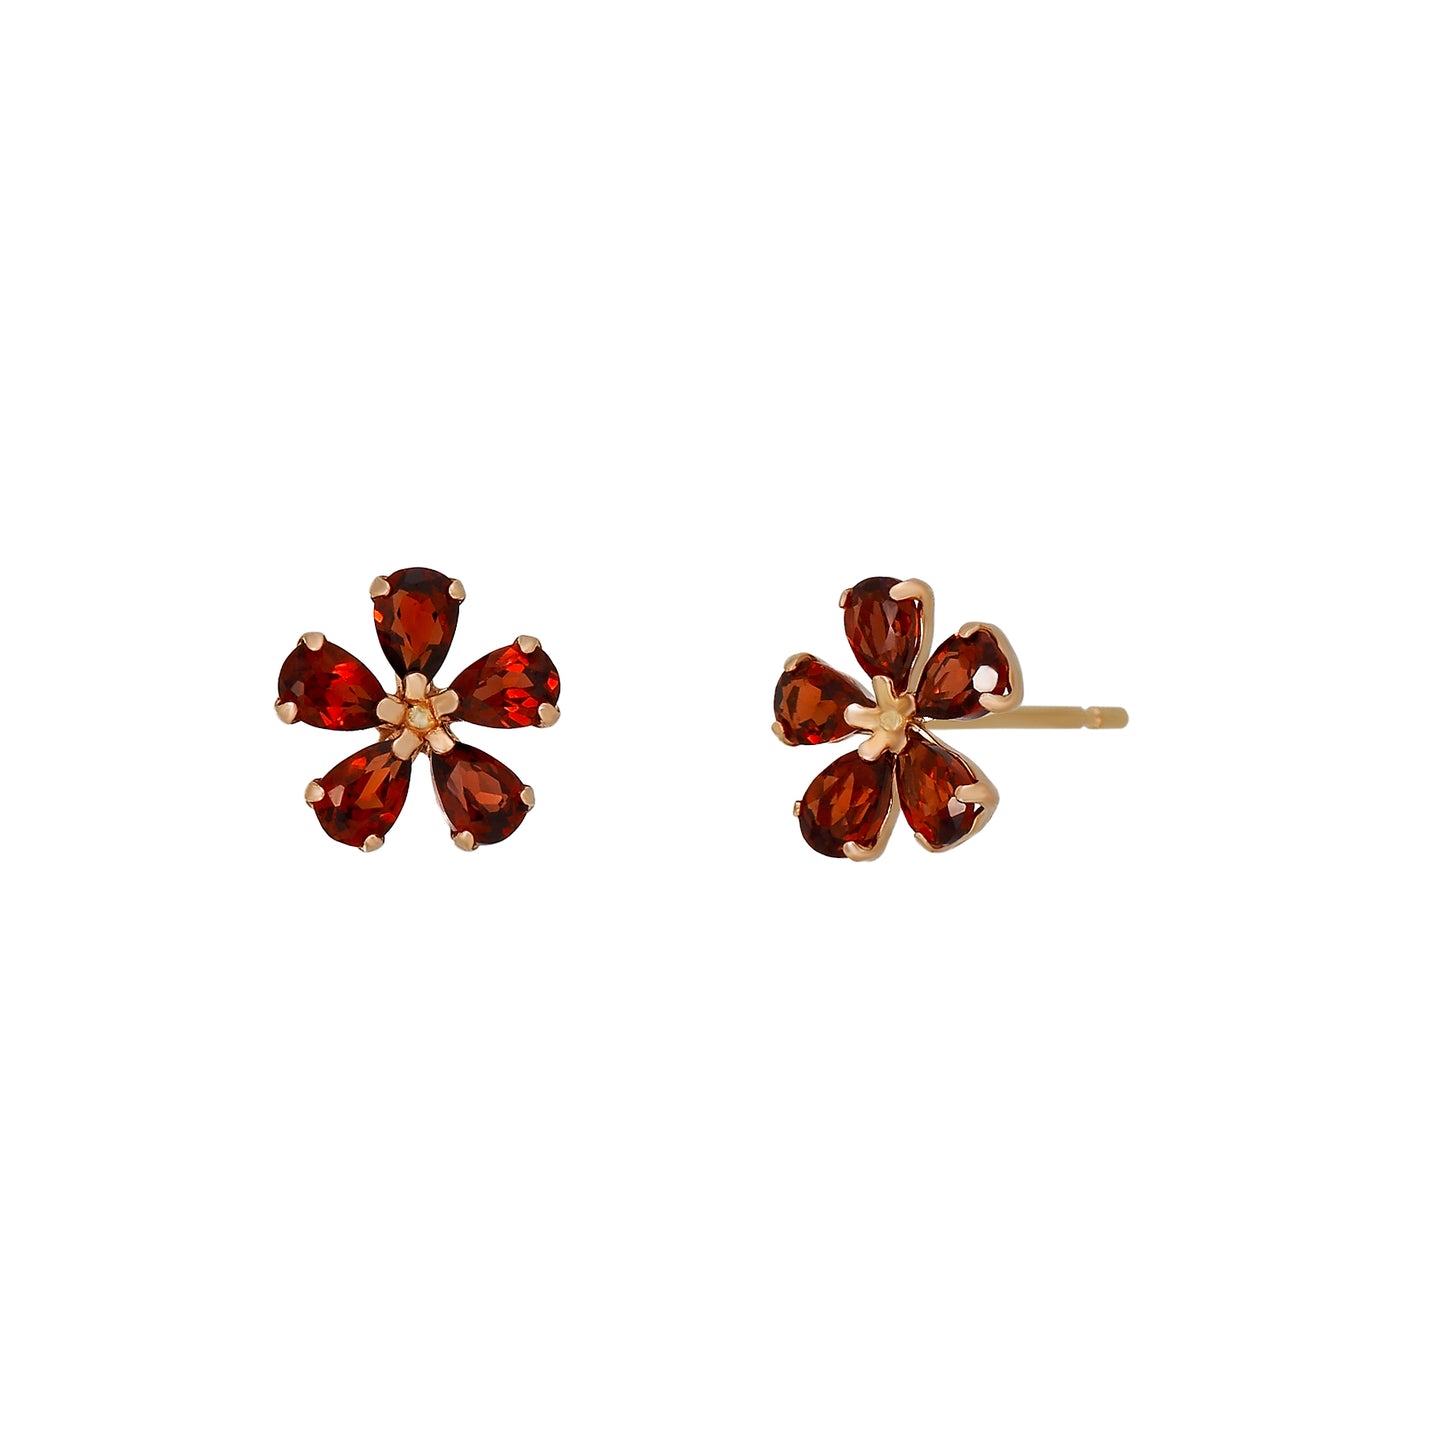 18K / 10K Rose Gold Garnet Flower Earrings - Product Image